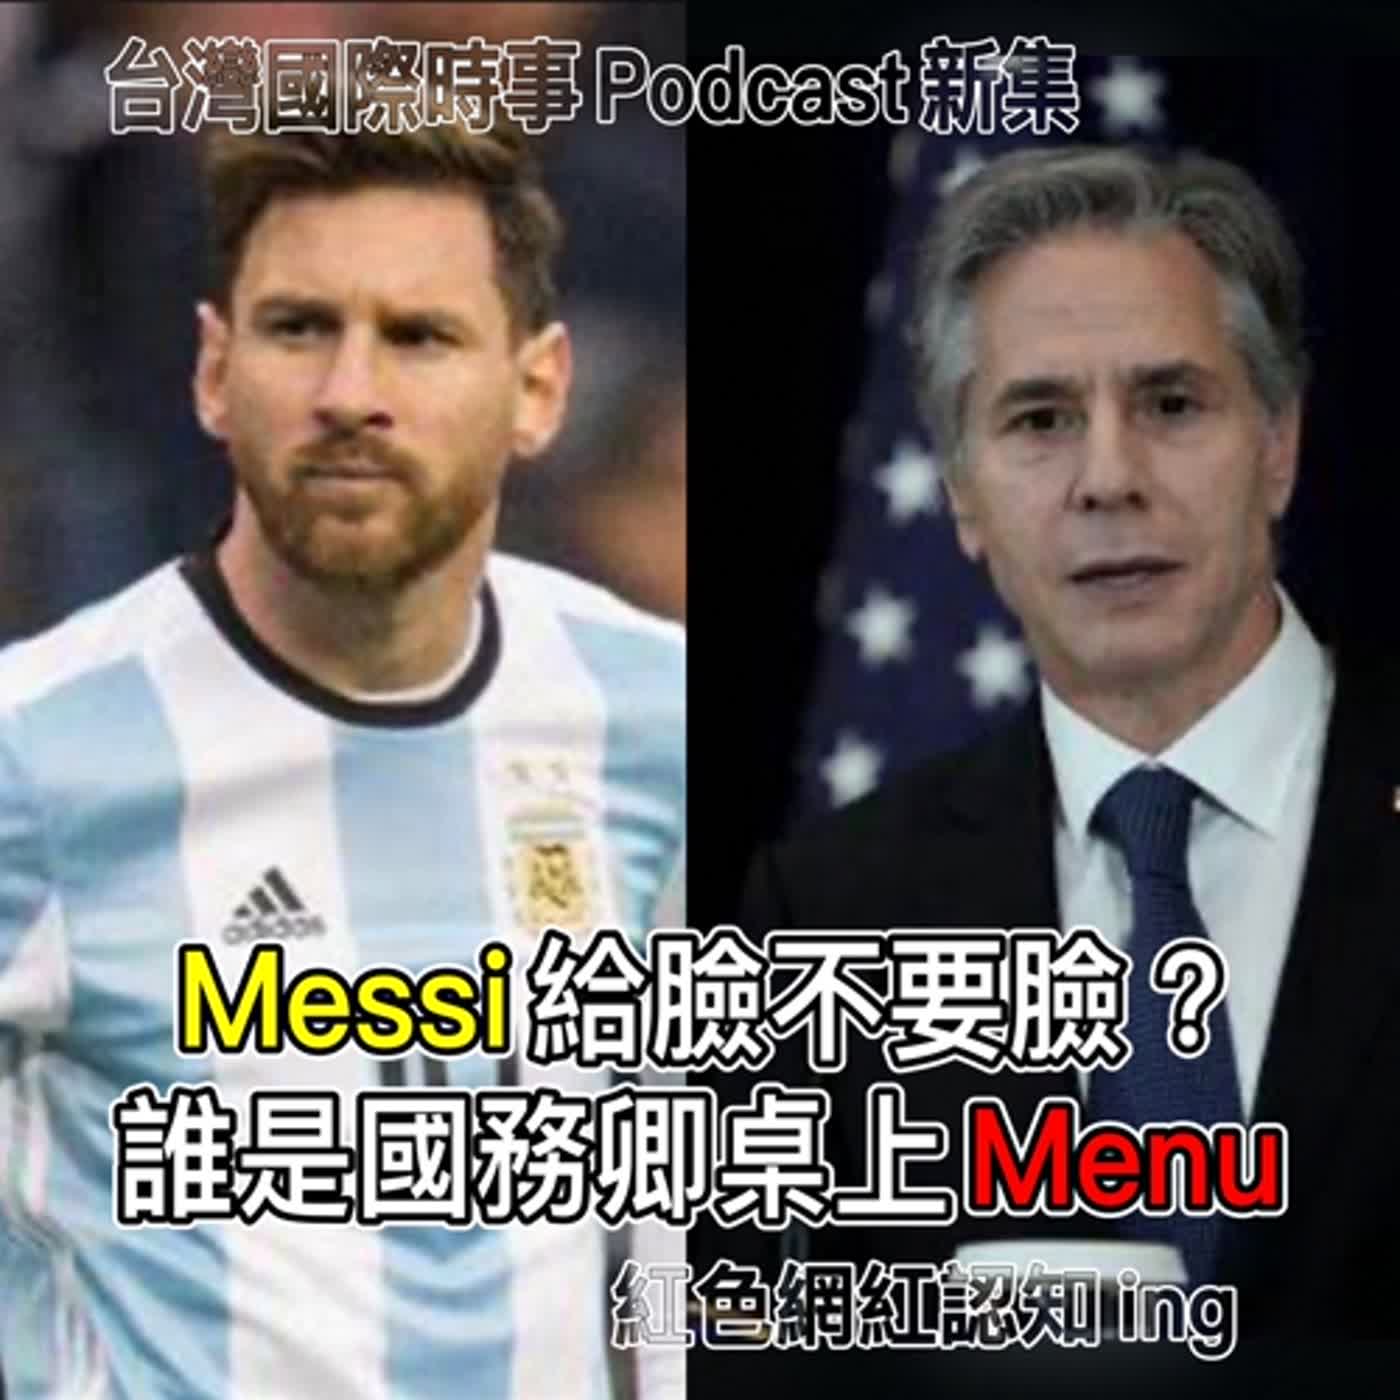 【台灣國際時事Podcast】Messi給臉不要臉？誰才是布林肯桌上的Menu；金門衝突升溫將引發台海危機？